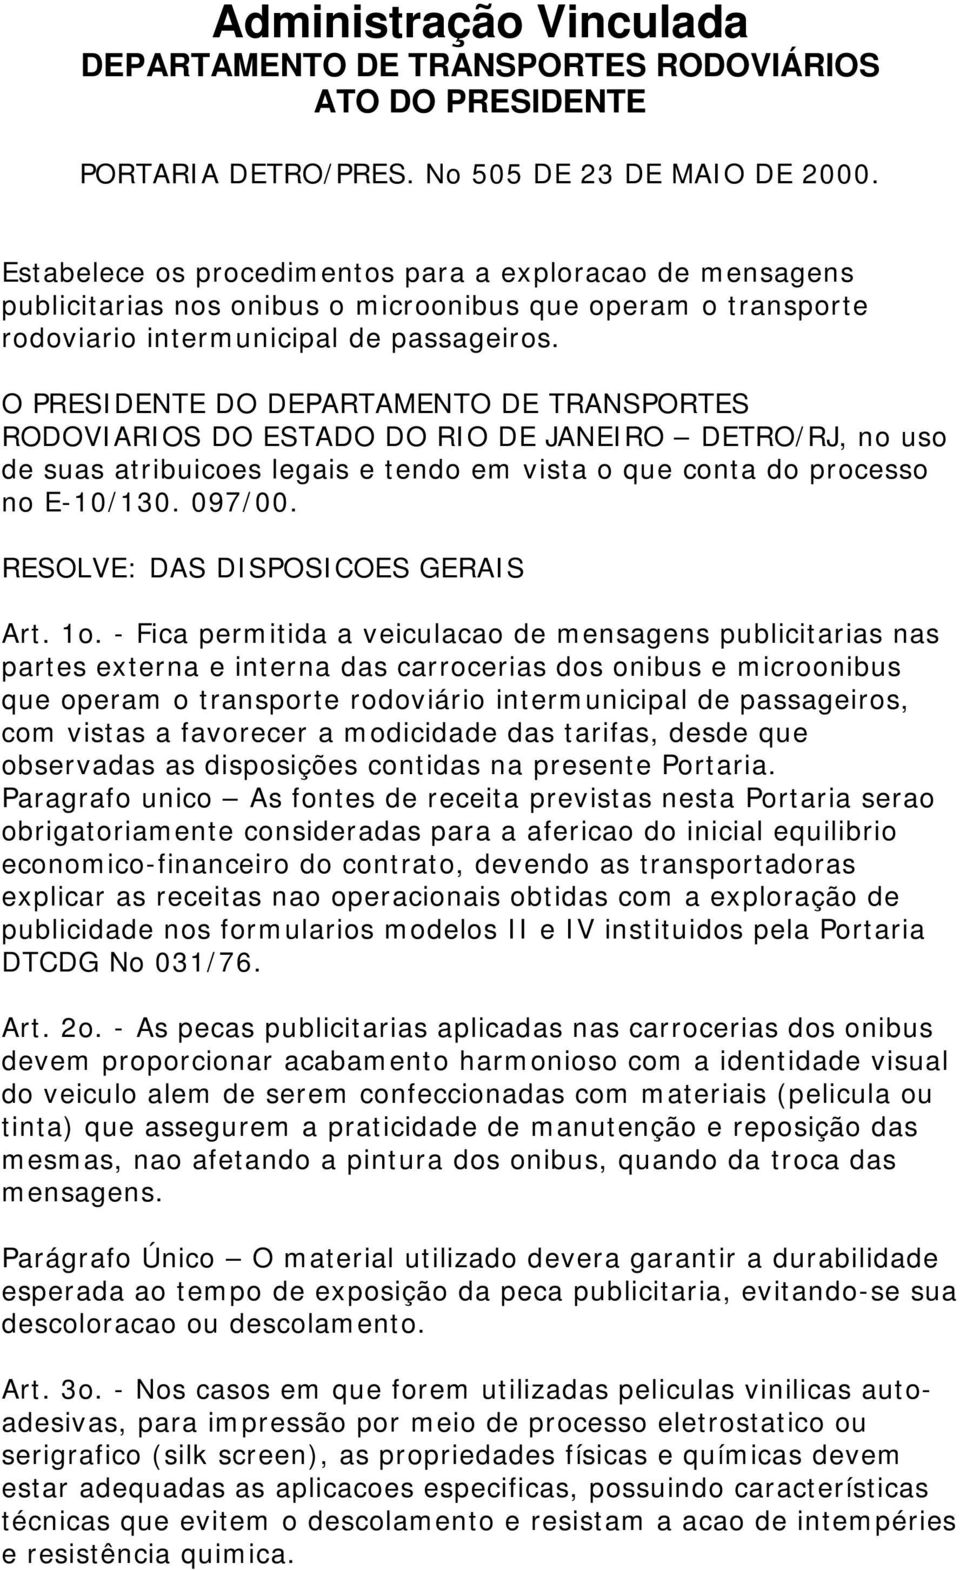 O PRESIDENTE DO DEPARTAMENTO DE TRANSPORTES RODOVIARIOS DO ESTADO DO RIO DE JANEIRO DETRO/RJ, no uso de suas atribuicoes legais e tendo em vista o que conta do processo no E-10/130. 097/00.